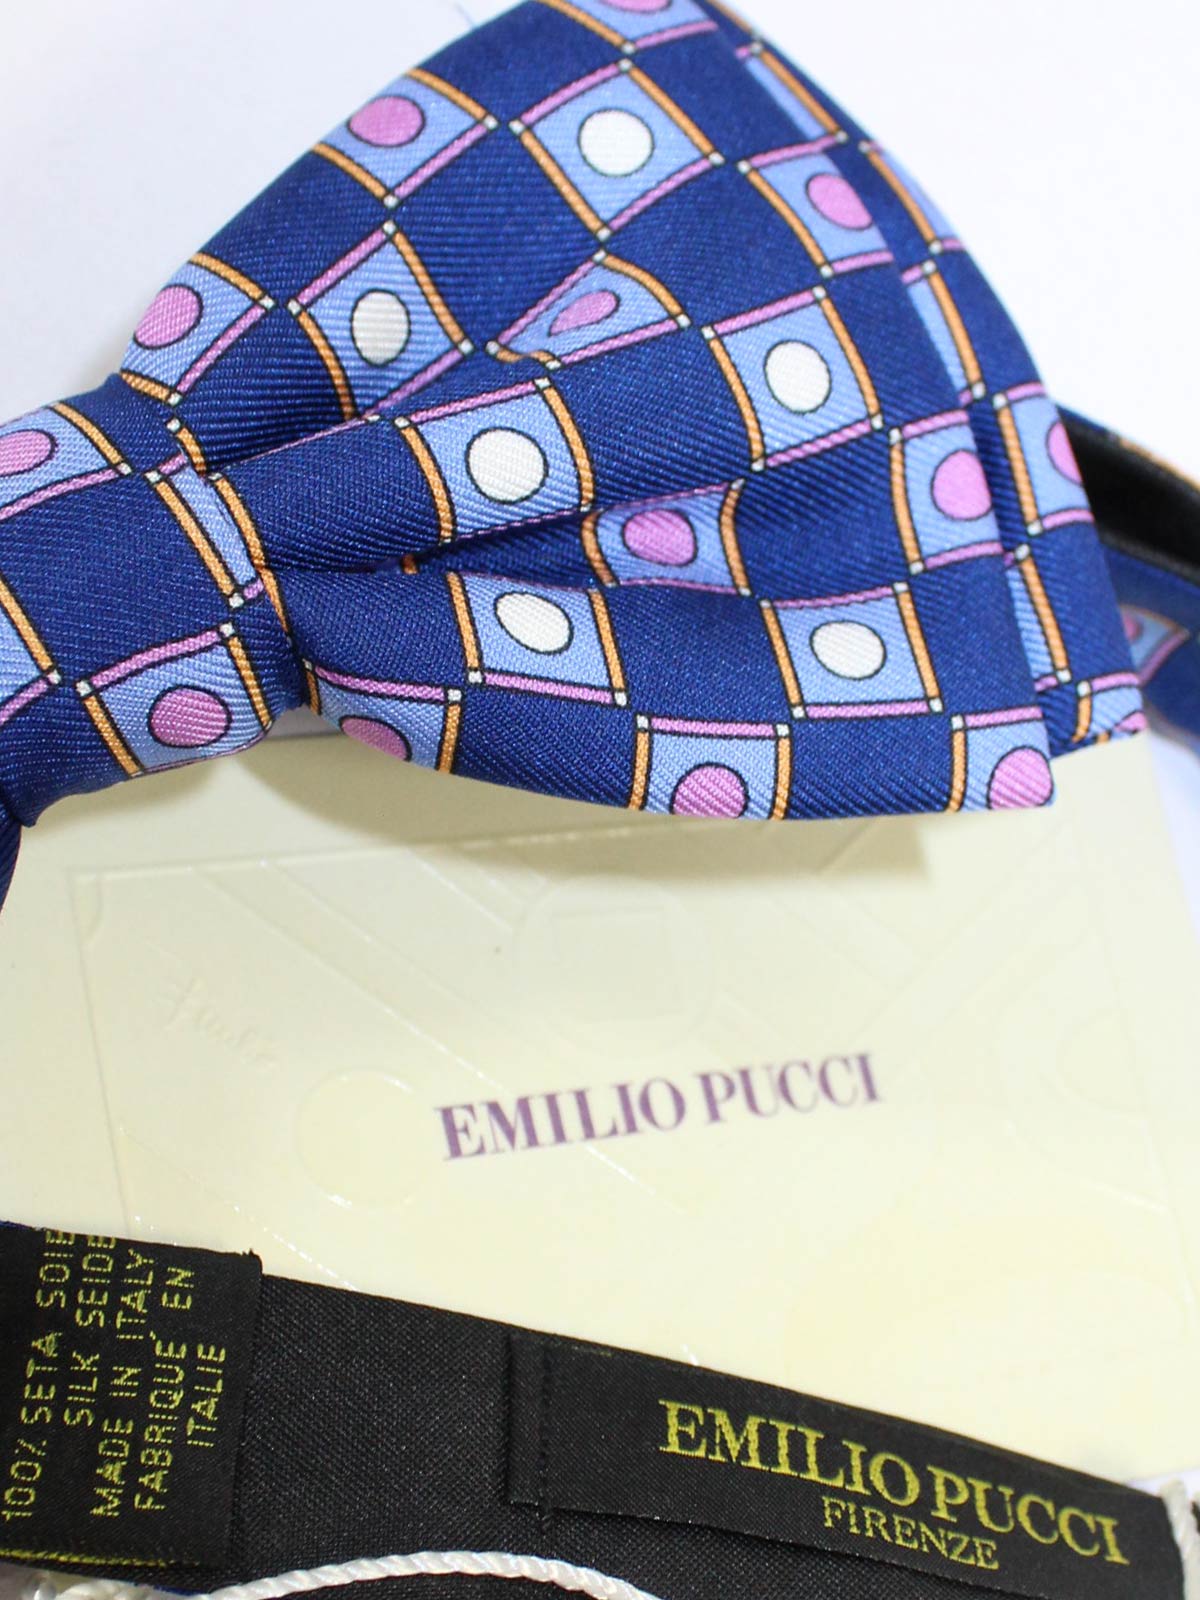 Emilio Pucci Silk Tie Signature Orange Brown Design